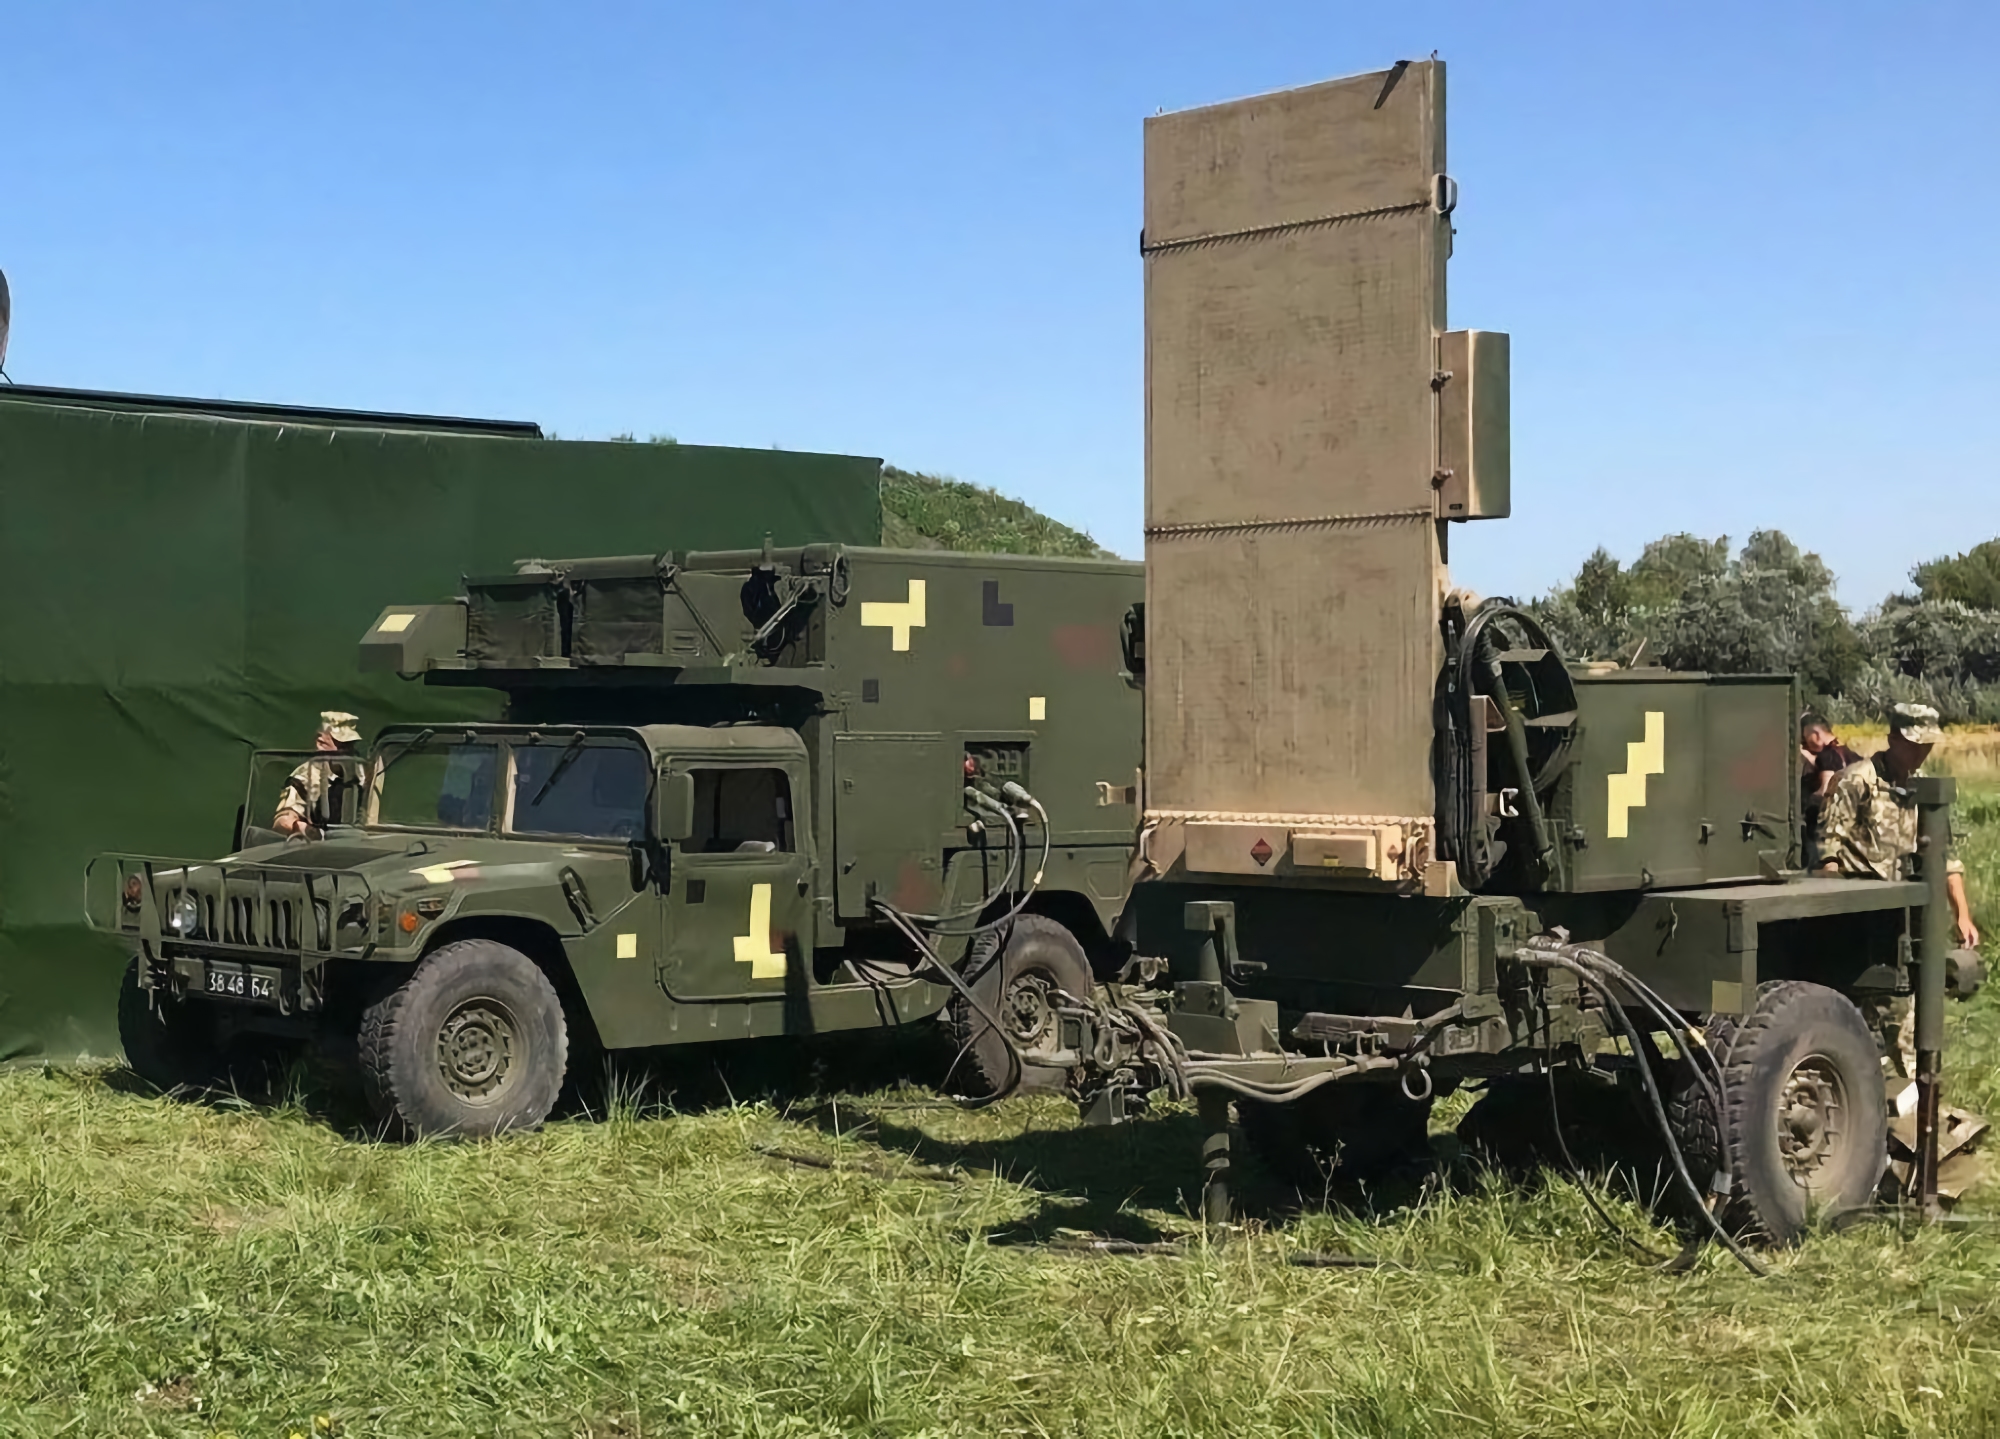 Le forze armate ucraine utilizzano i radar controbatteria americani AN / TPQ-36 nella parte anteriore (video)